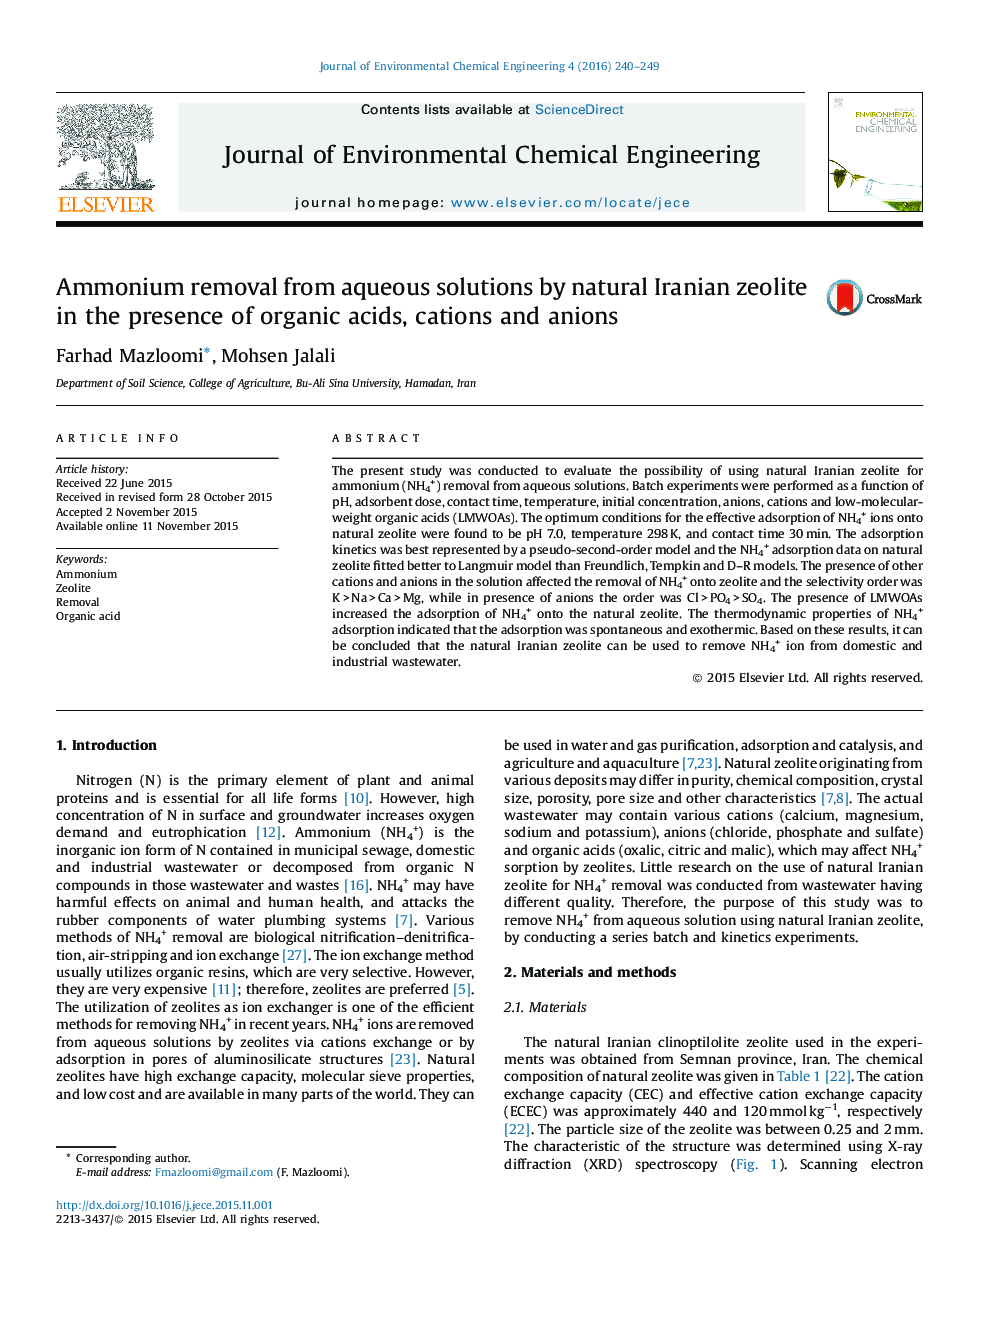 حذف آمونیاک از محلول های آبی توسط زئولیت طبیعی ایرانی در حضور اسیدهای ارگانیکی، کاتیون ها و آنیون ها